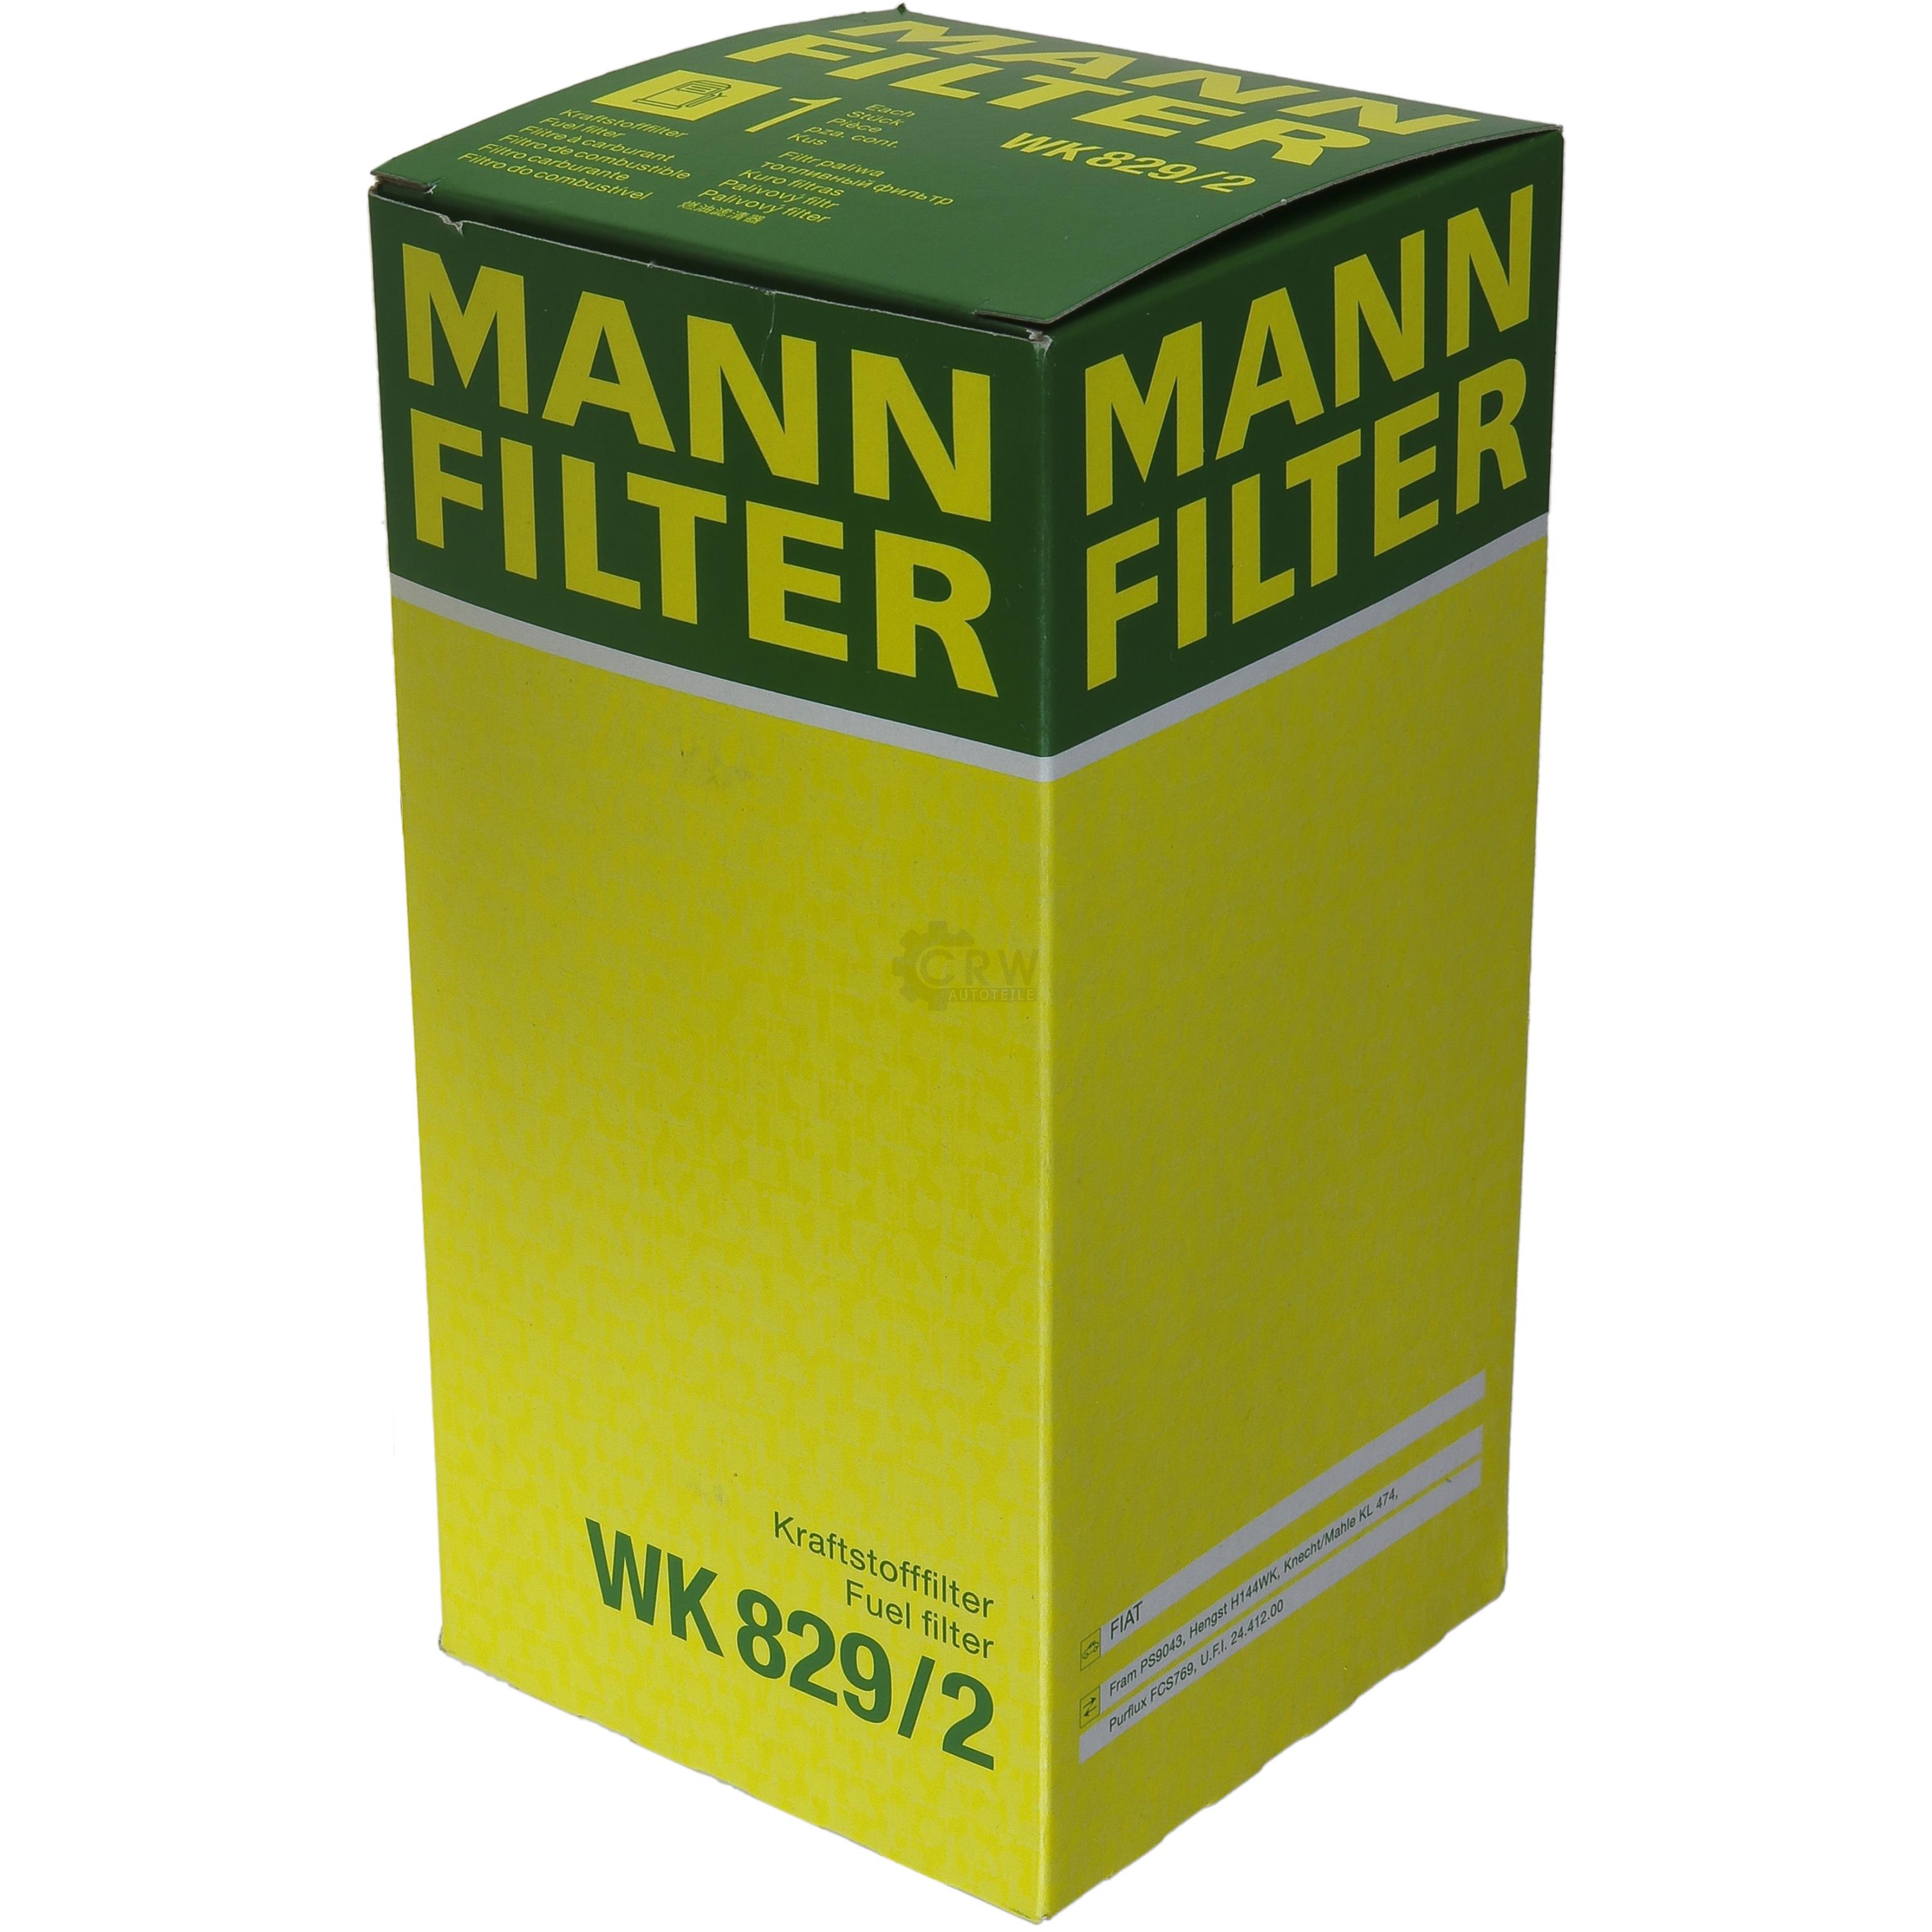 MANN-FILTER Kraftstofffilter WK 829/2 Fuel Filter